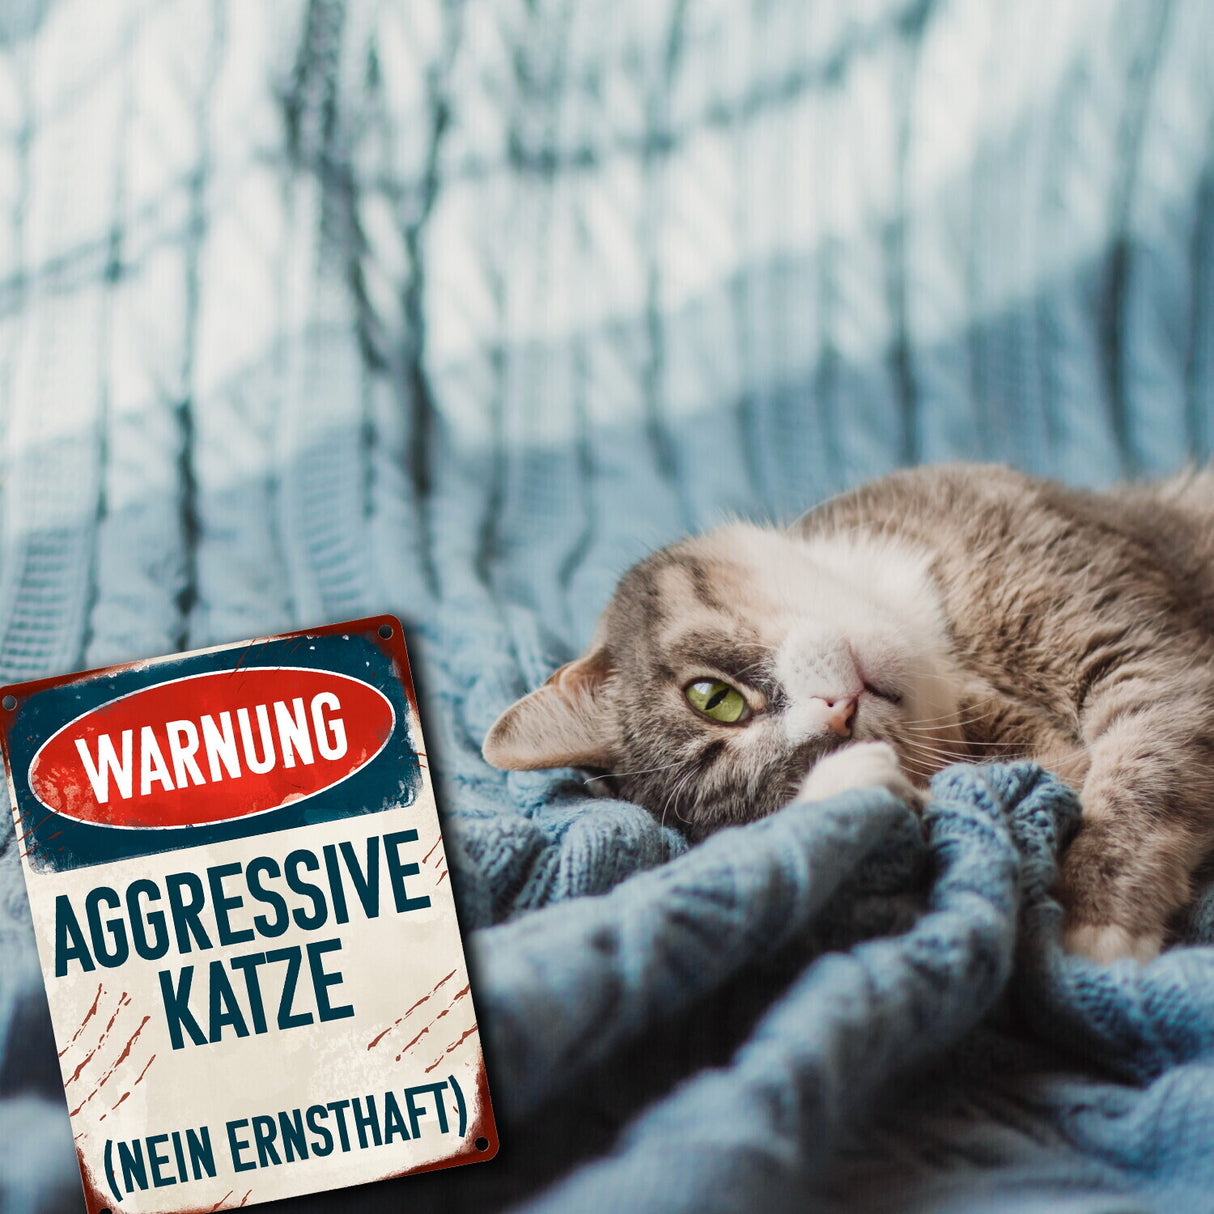 Warnung aggressive Katze (nein ernsthaft) Metallschild für Katzenhalter